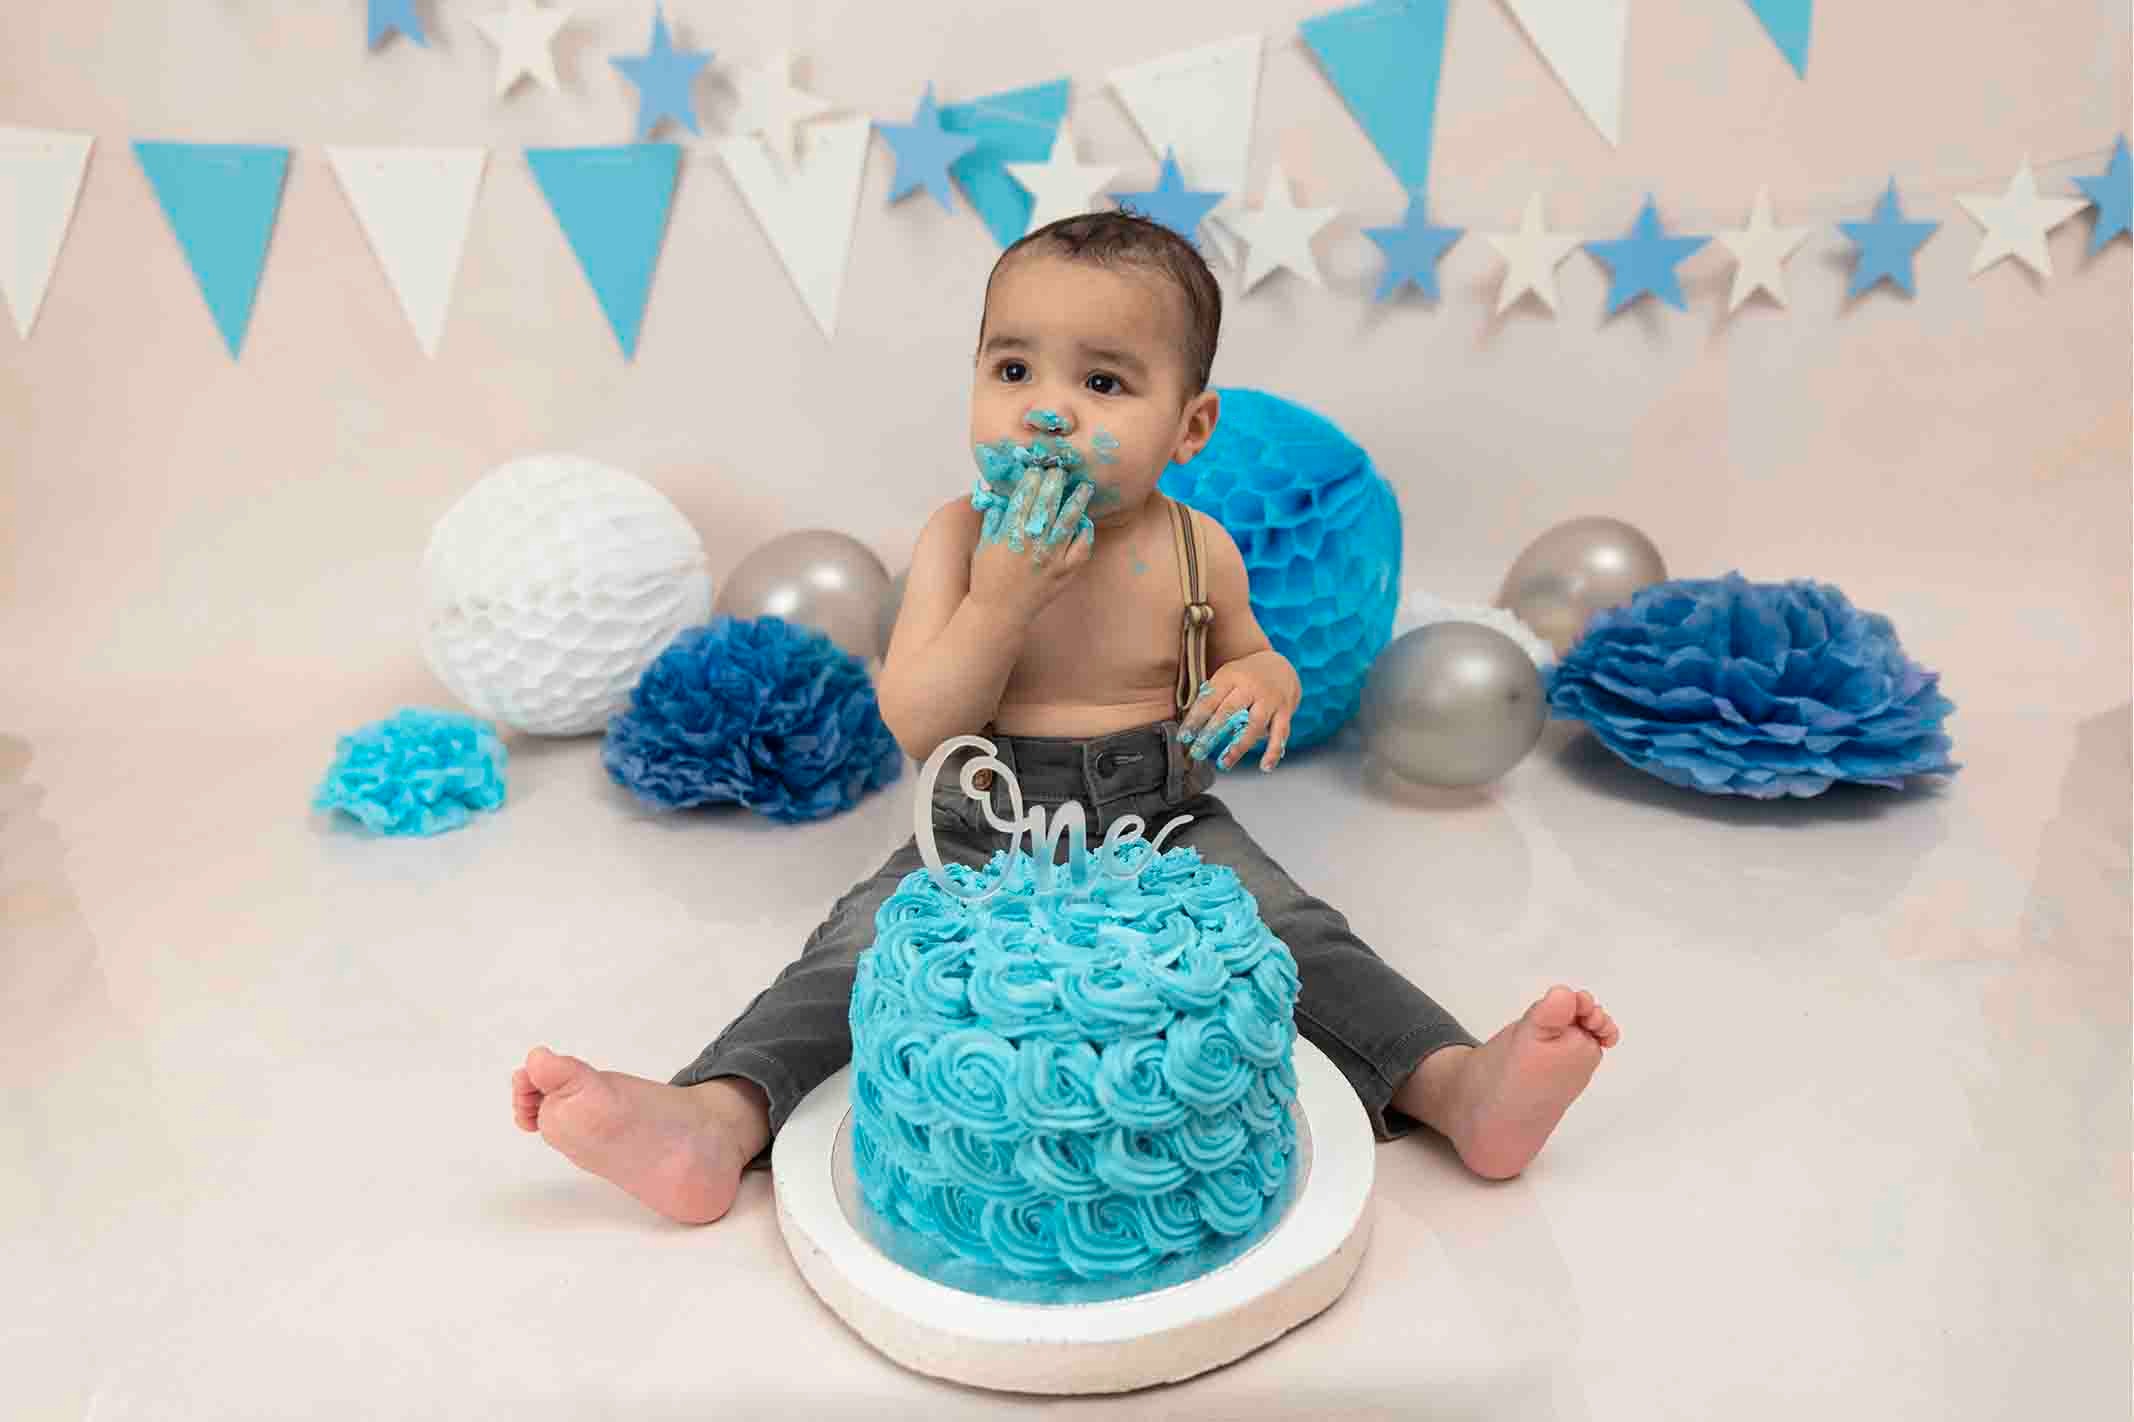 Cake smash photoshoot with boy tasting cake